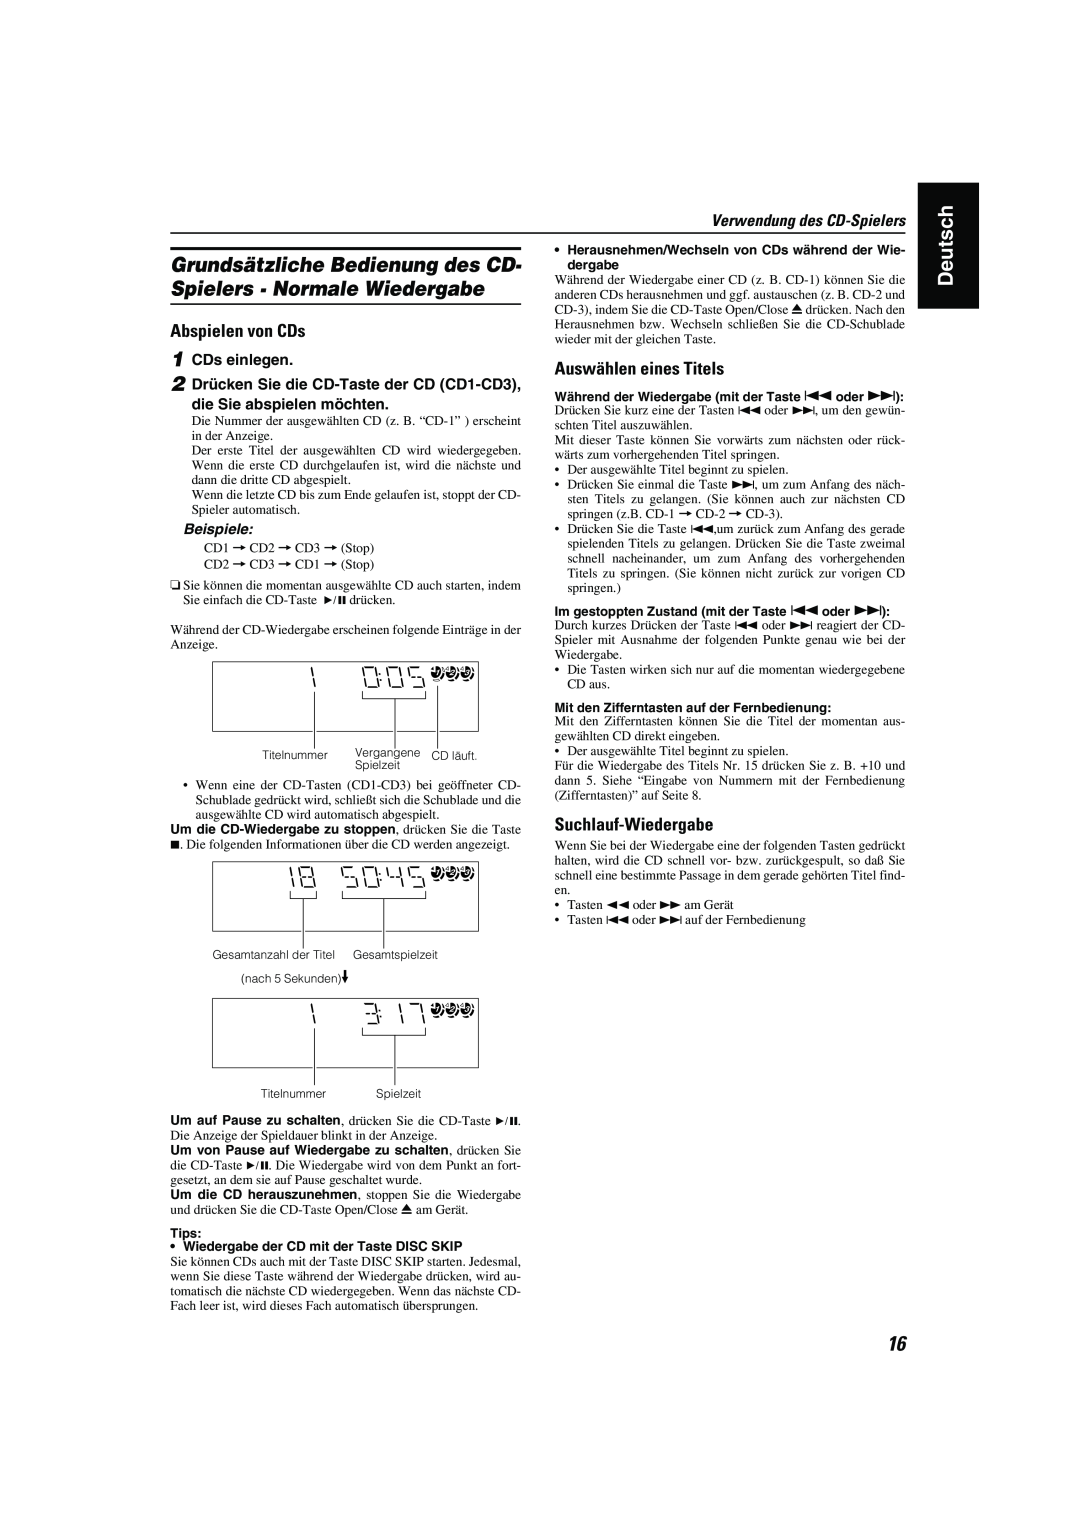 JVC CA-MXK10R manual Auswählen eines Titels, Suchlauf-Wiedergabe, Verwendung des CD-Spielers, Beispiele, Deutsch 